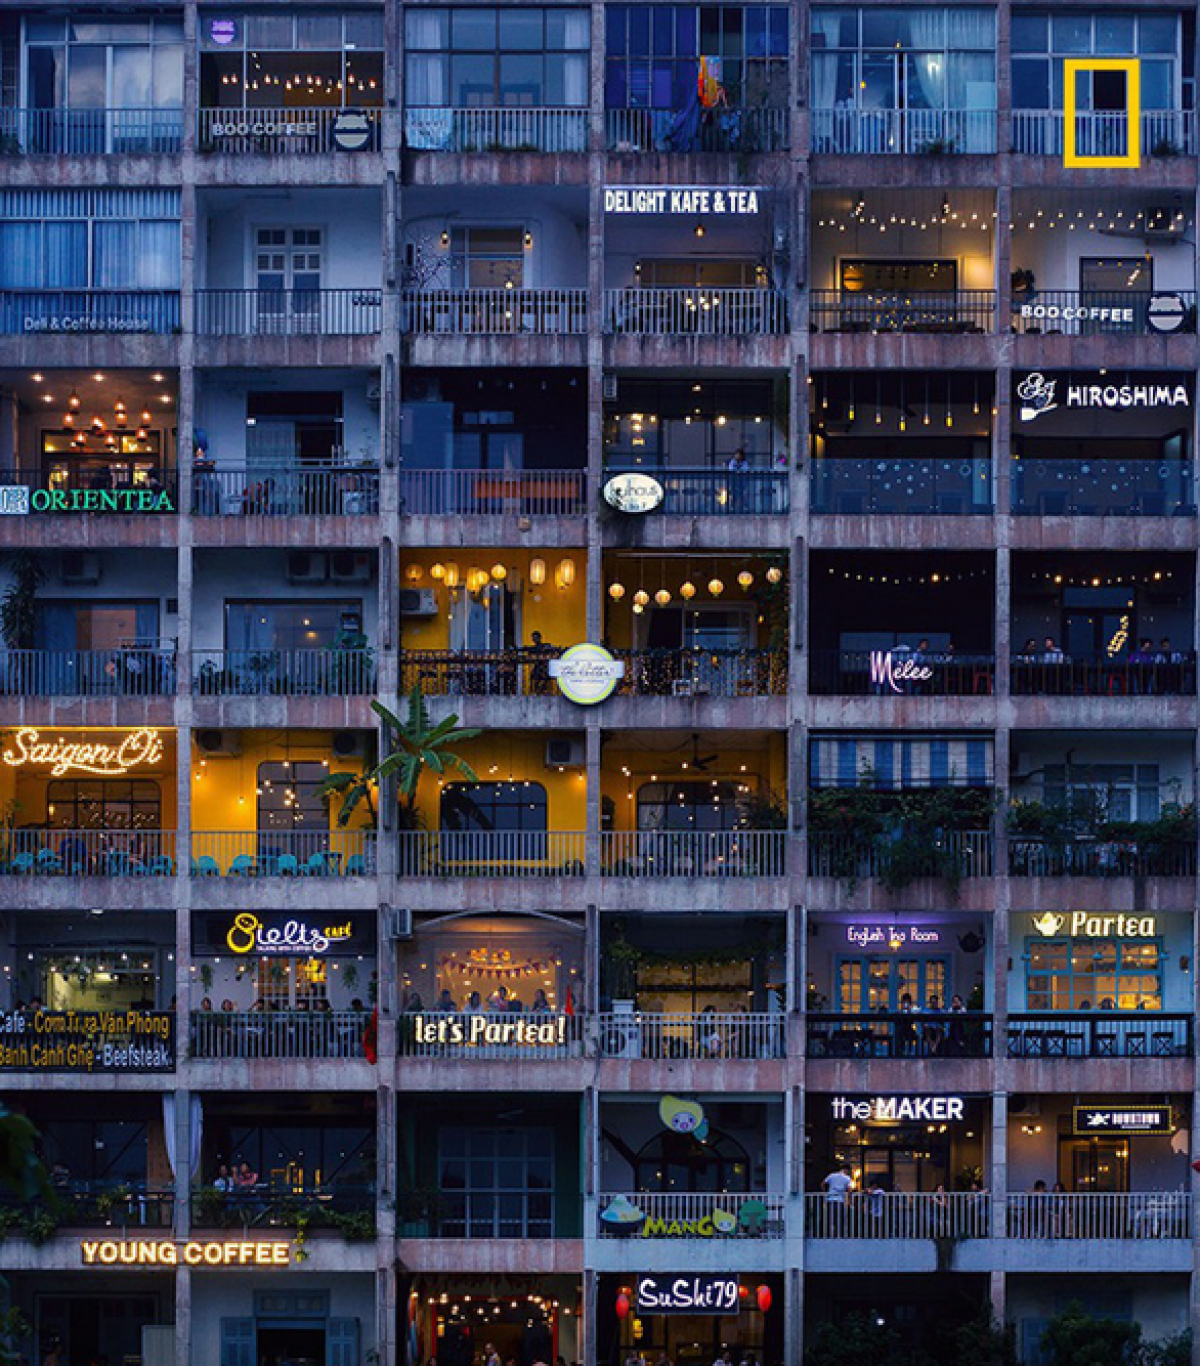 Ảnh khu chung cư Sài Gòn gây thích thú vì đầy ắp biển hiệu cà phê vui mắt từng xuất hiện trên National Geographic UK - Ảnh: SAMSARA TRAN/NG